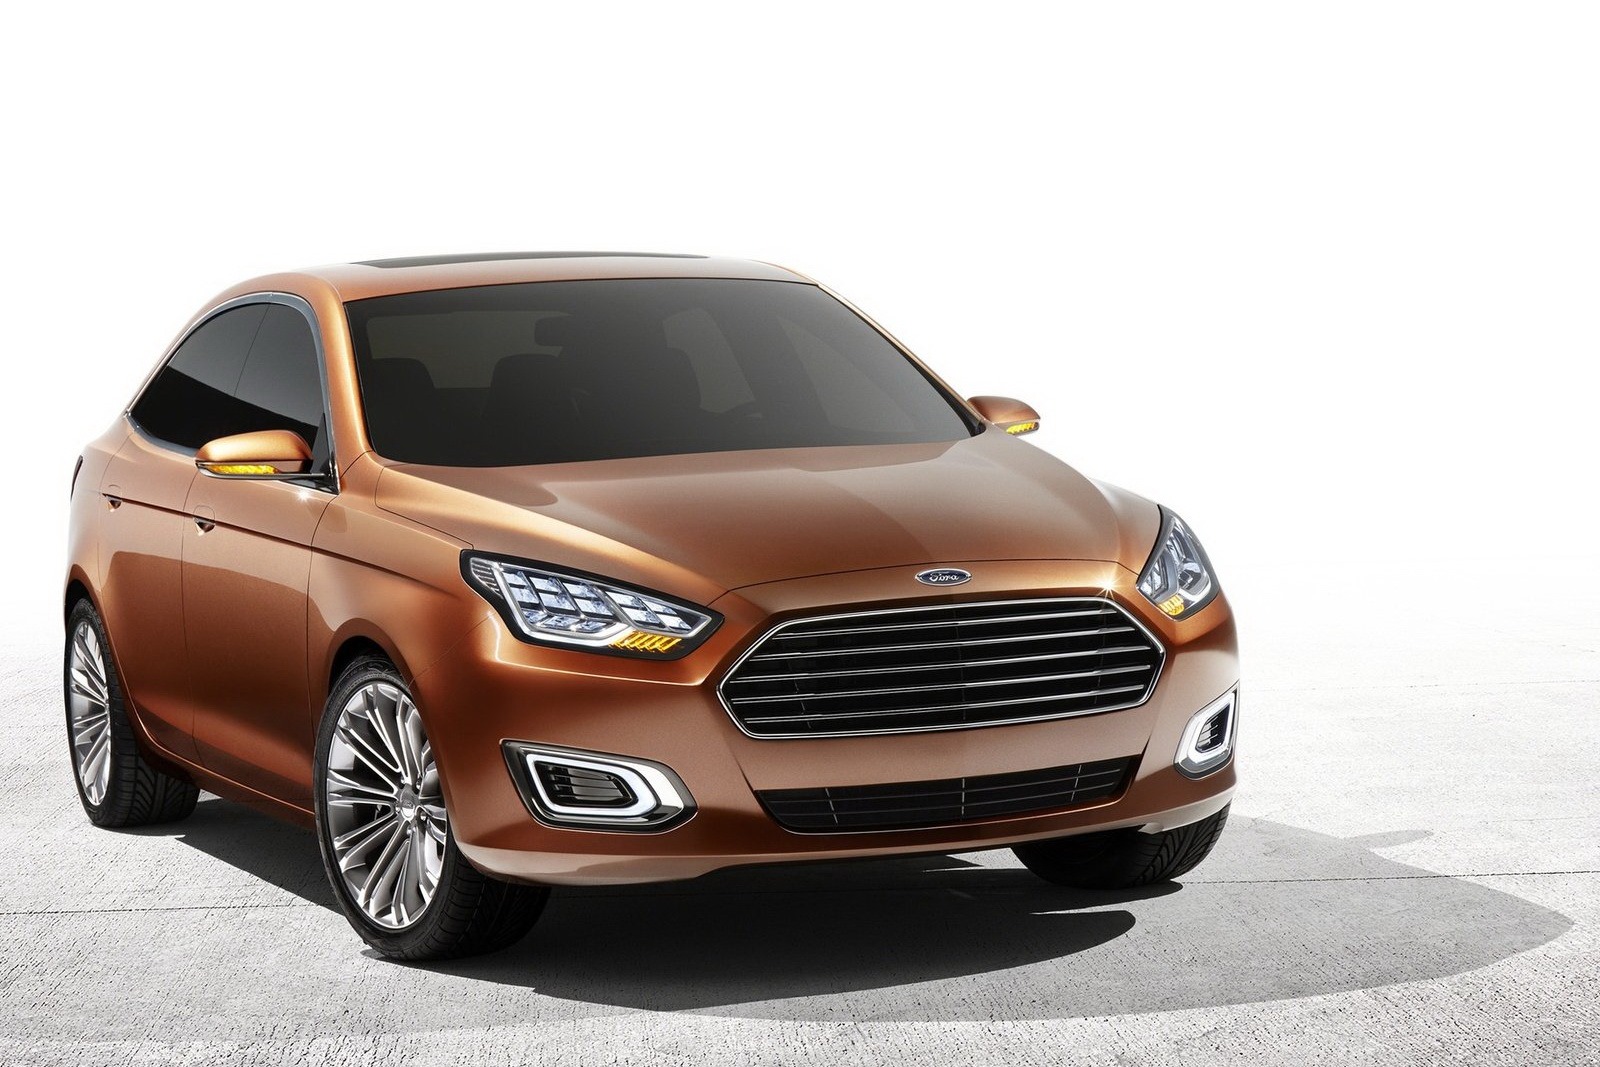 2013-Ford-Escort-konsept-1.jpg